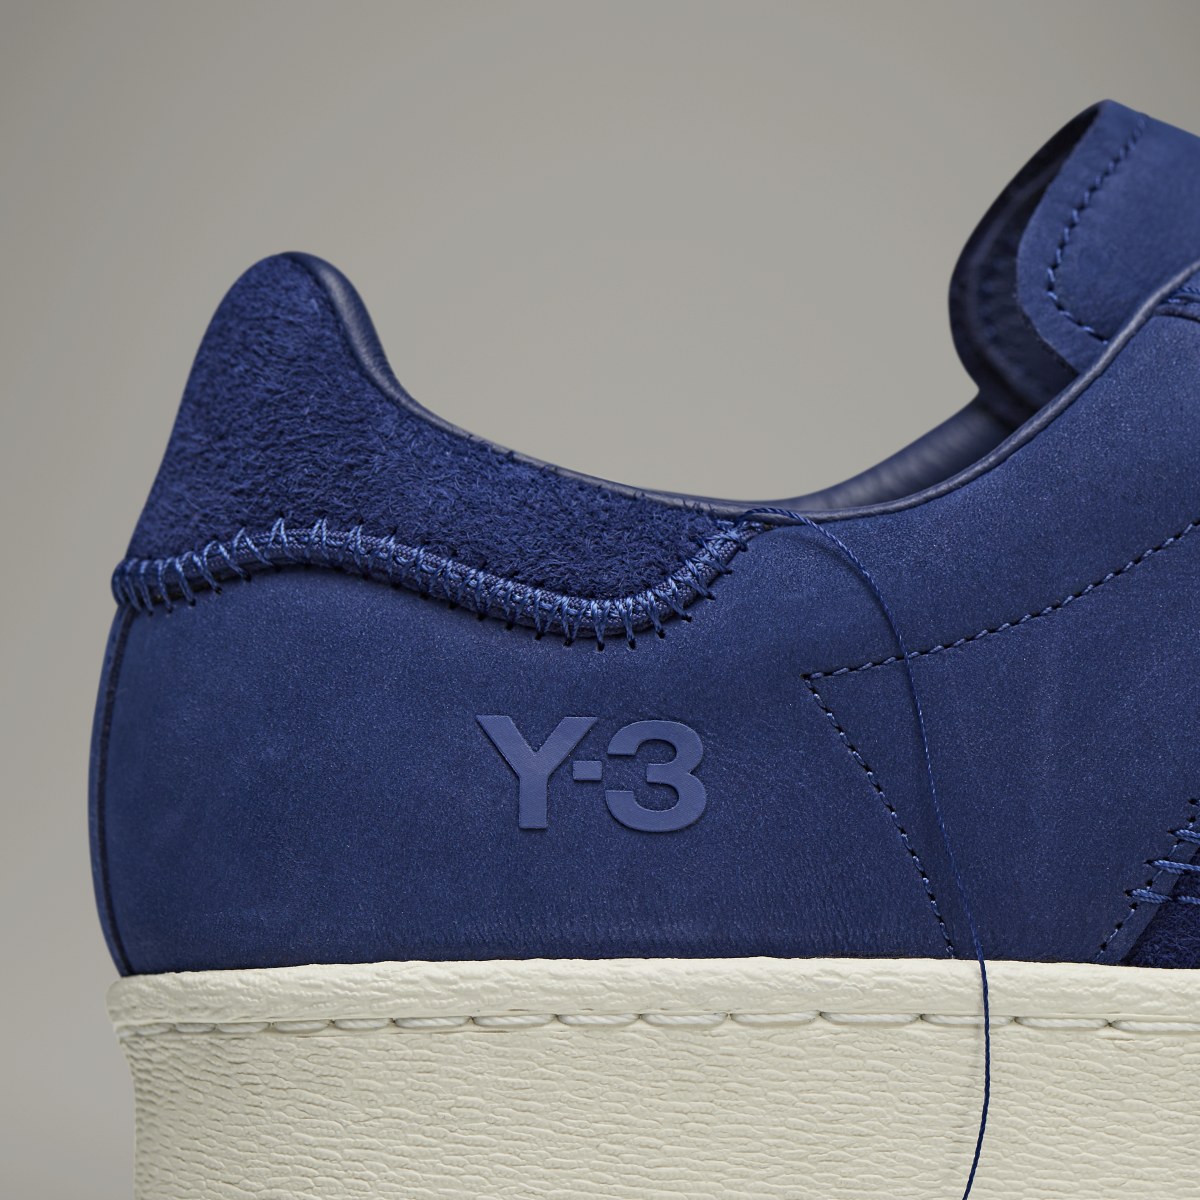 Adidas Y-3 Superstar. 11